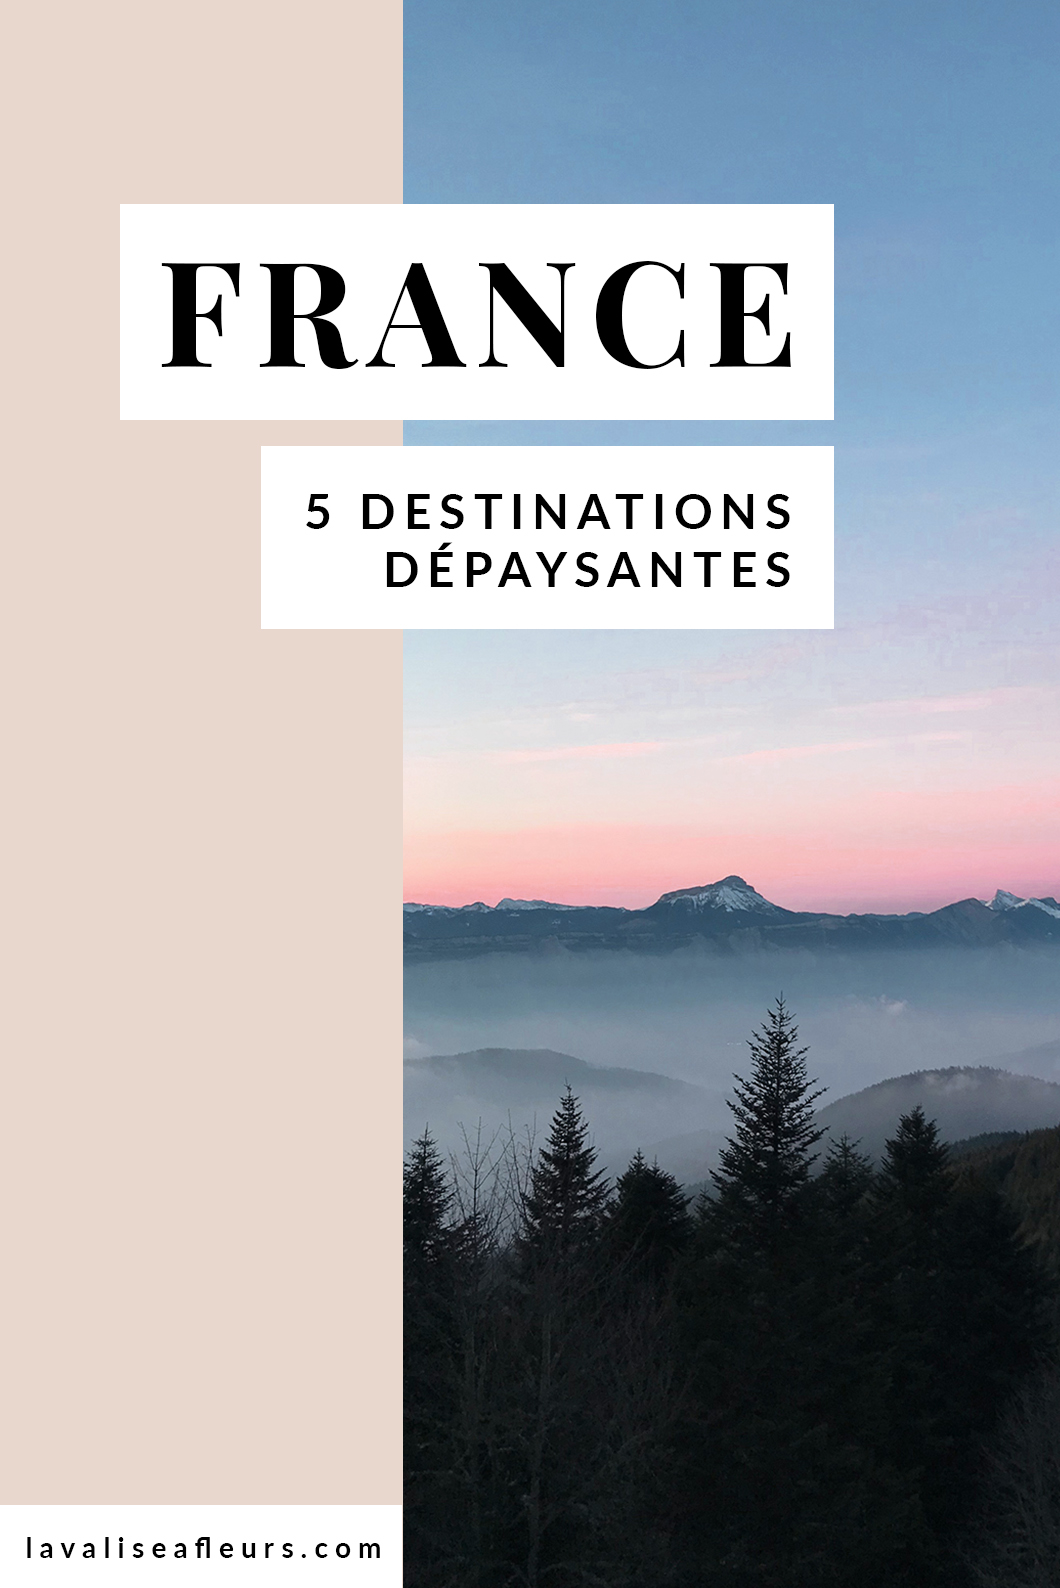 5 destinations dépaysantes en France pour un week end